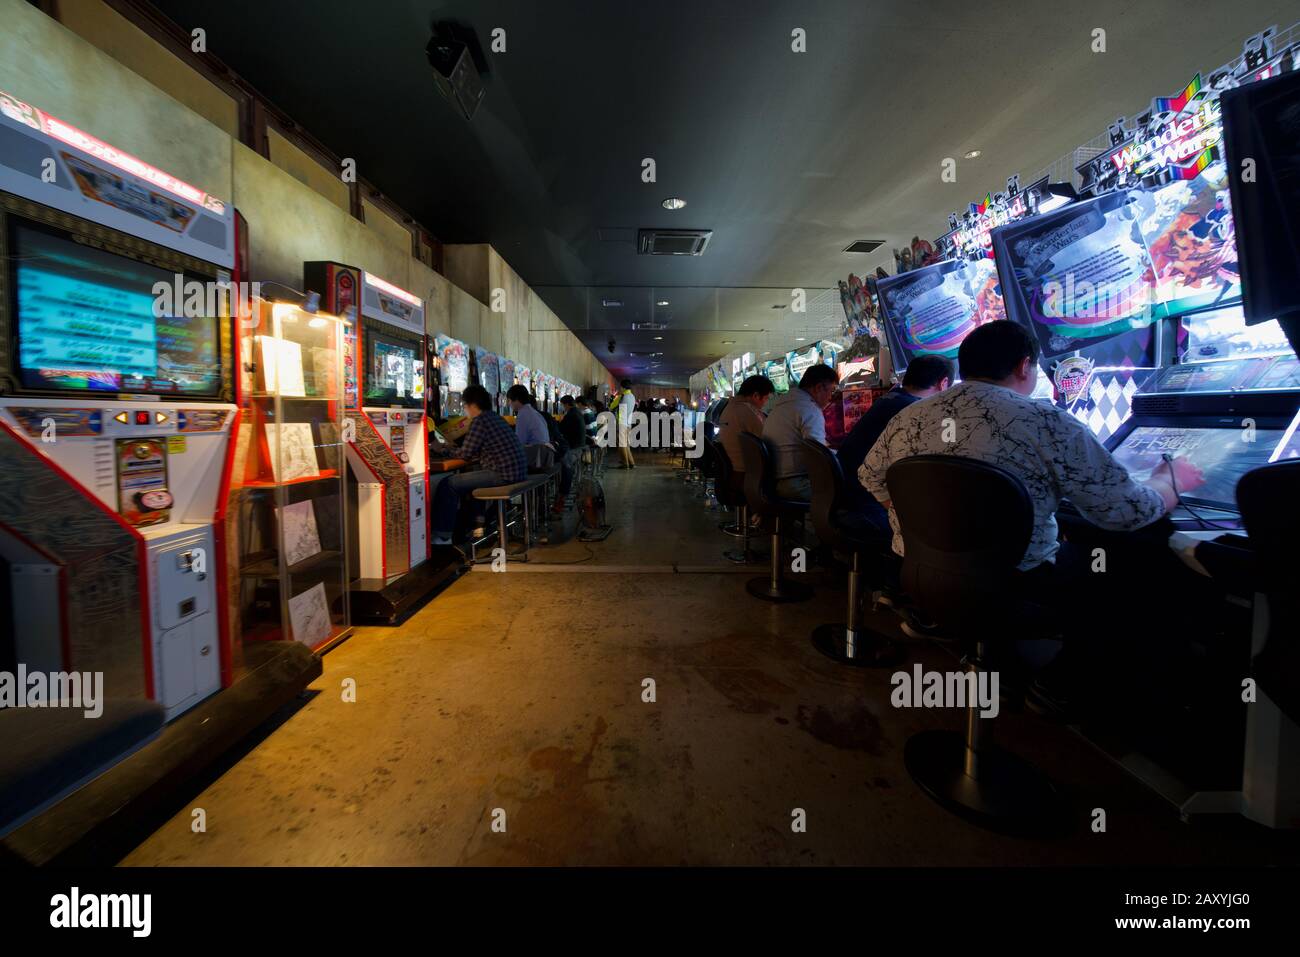 Arcade game machines inside Warehouse Arcade (Anata no Warehouse) at Kawasaki, Japan Stock Photo